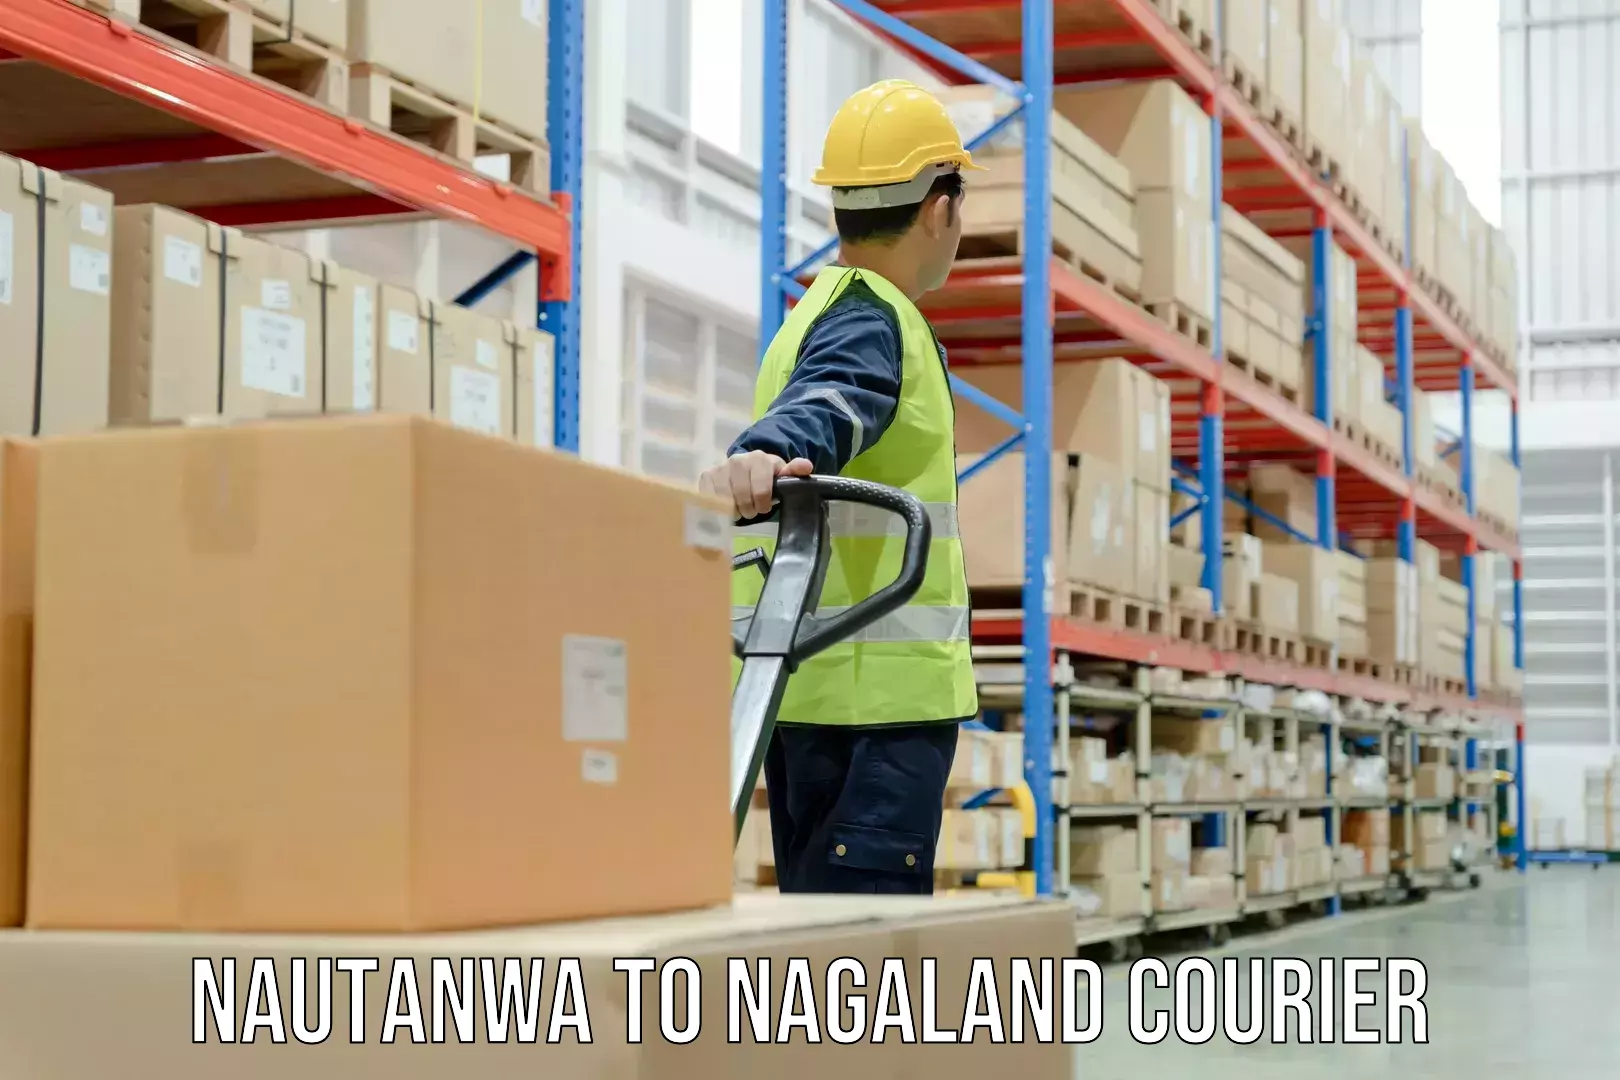 24/7 shipping services Nautanwa to Nagaland